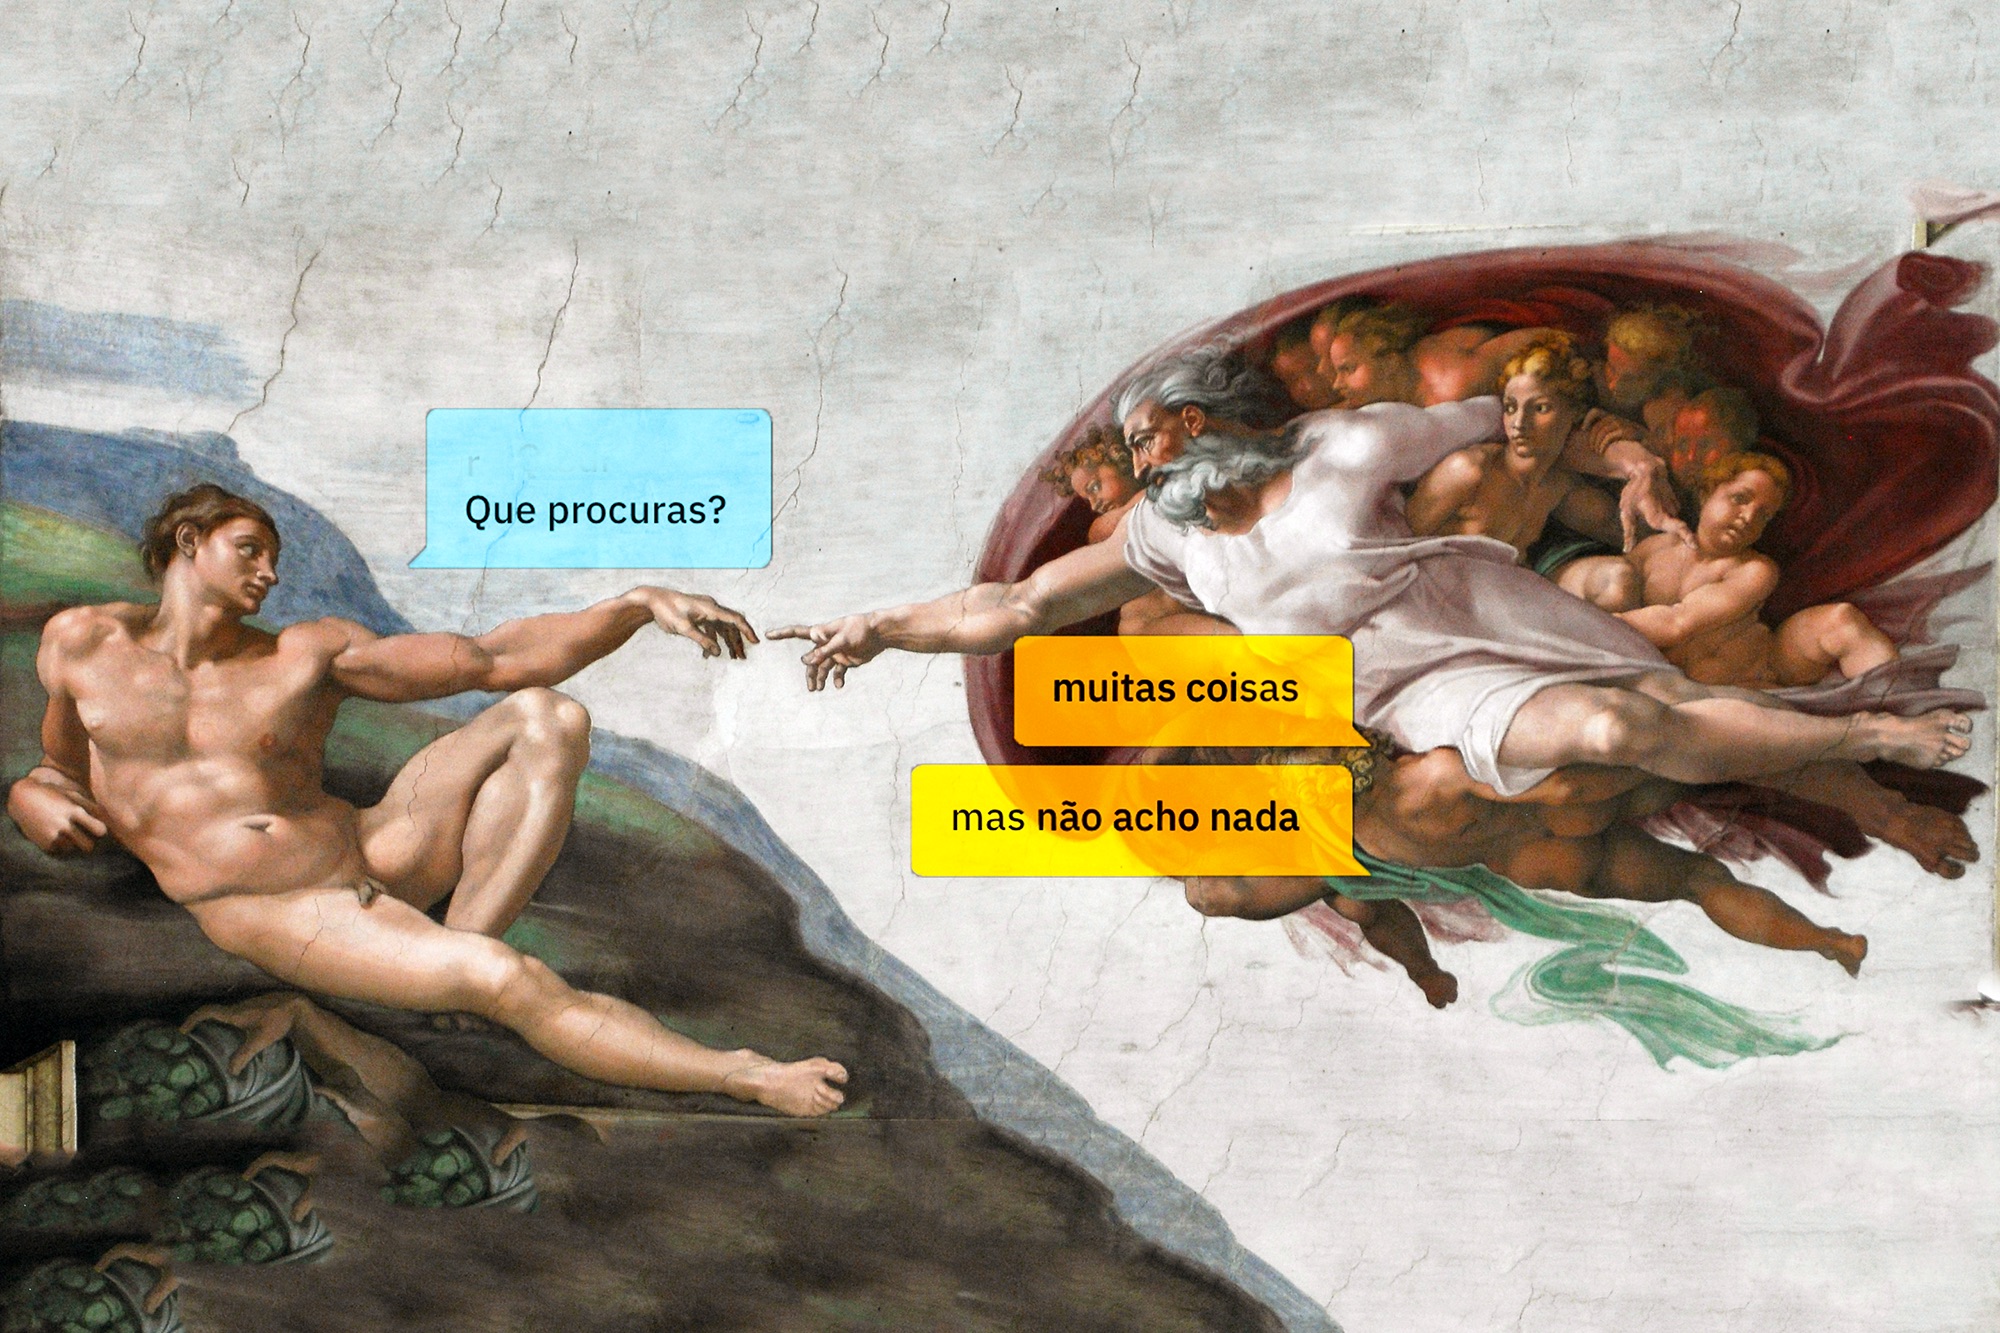 Paródia da pintura "A Criação de Adão" de Michelangelo. Adão pergunta "Que procuras?" e Deus responde "muitas coisas" e "mas não acho nada" em caixas de diálogo ao estilo de mensagens de texto.